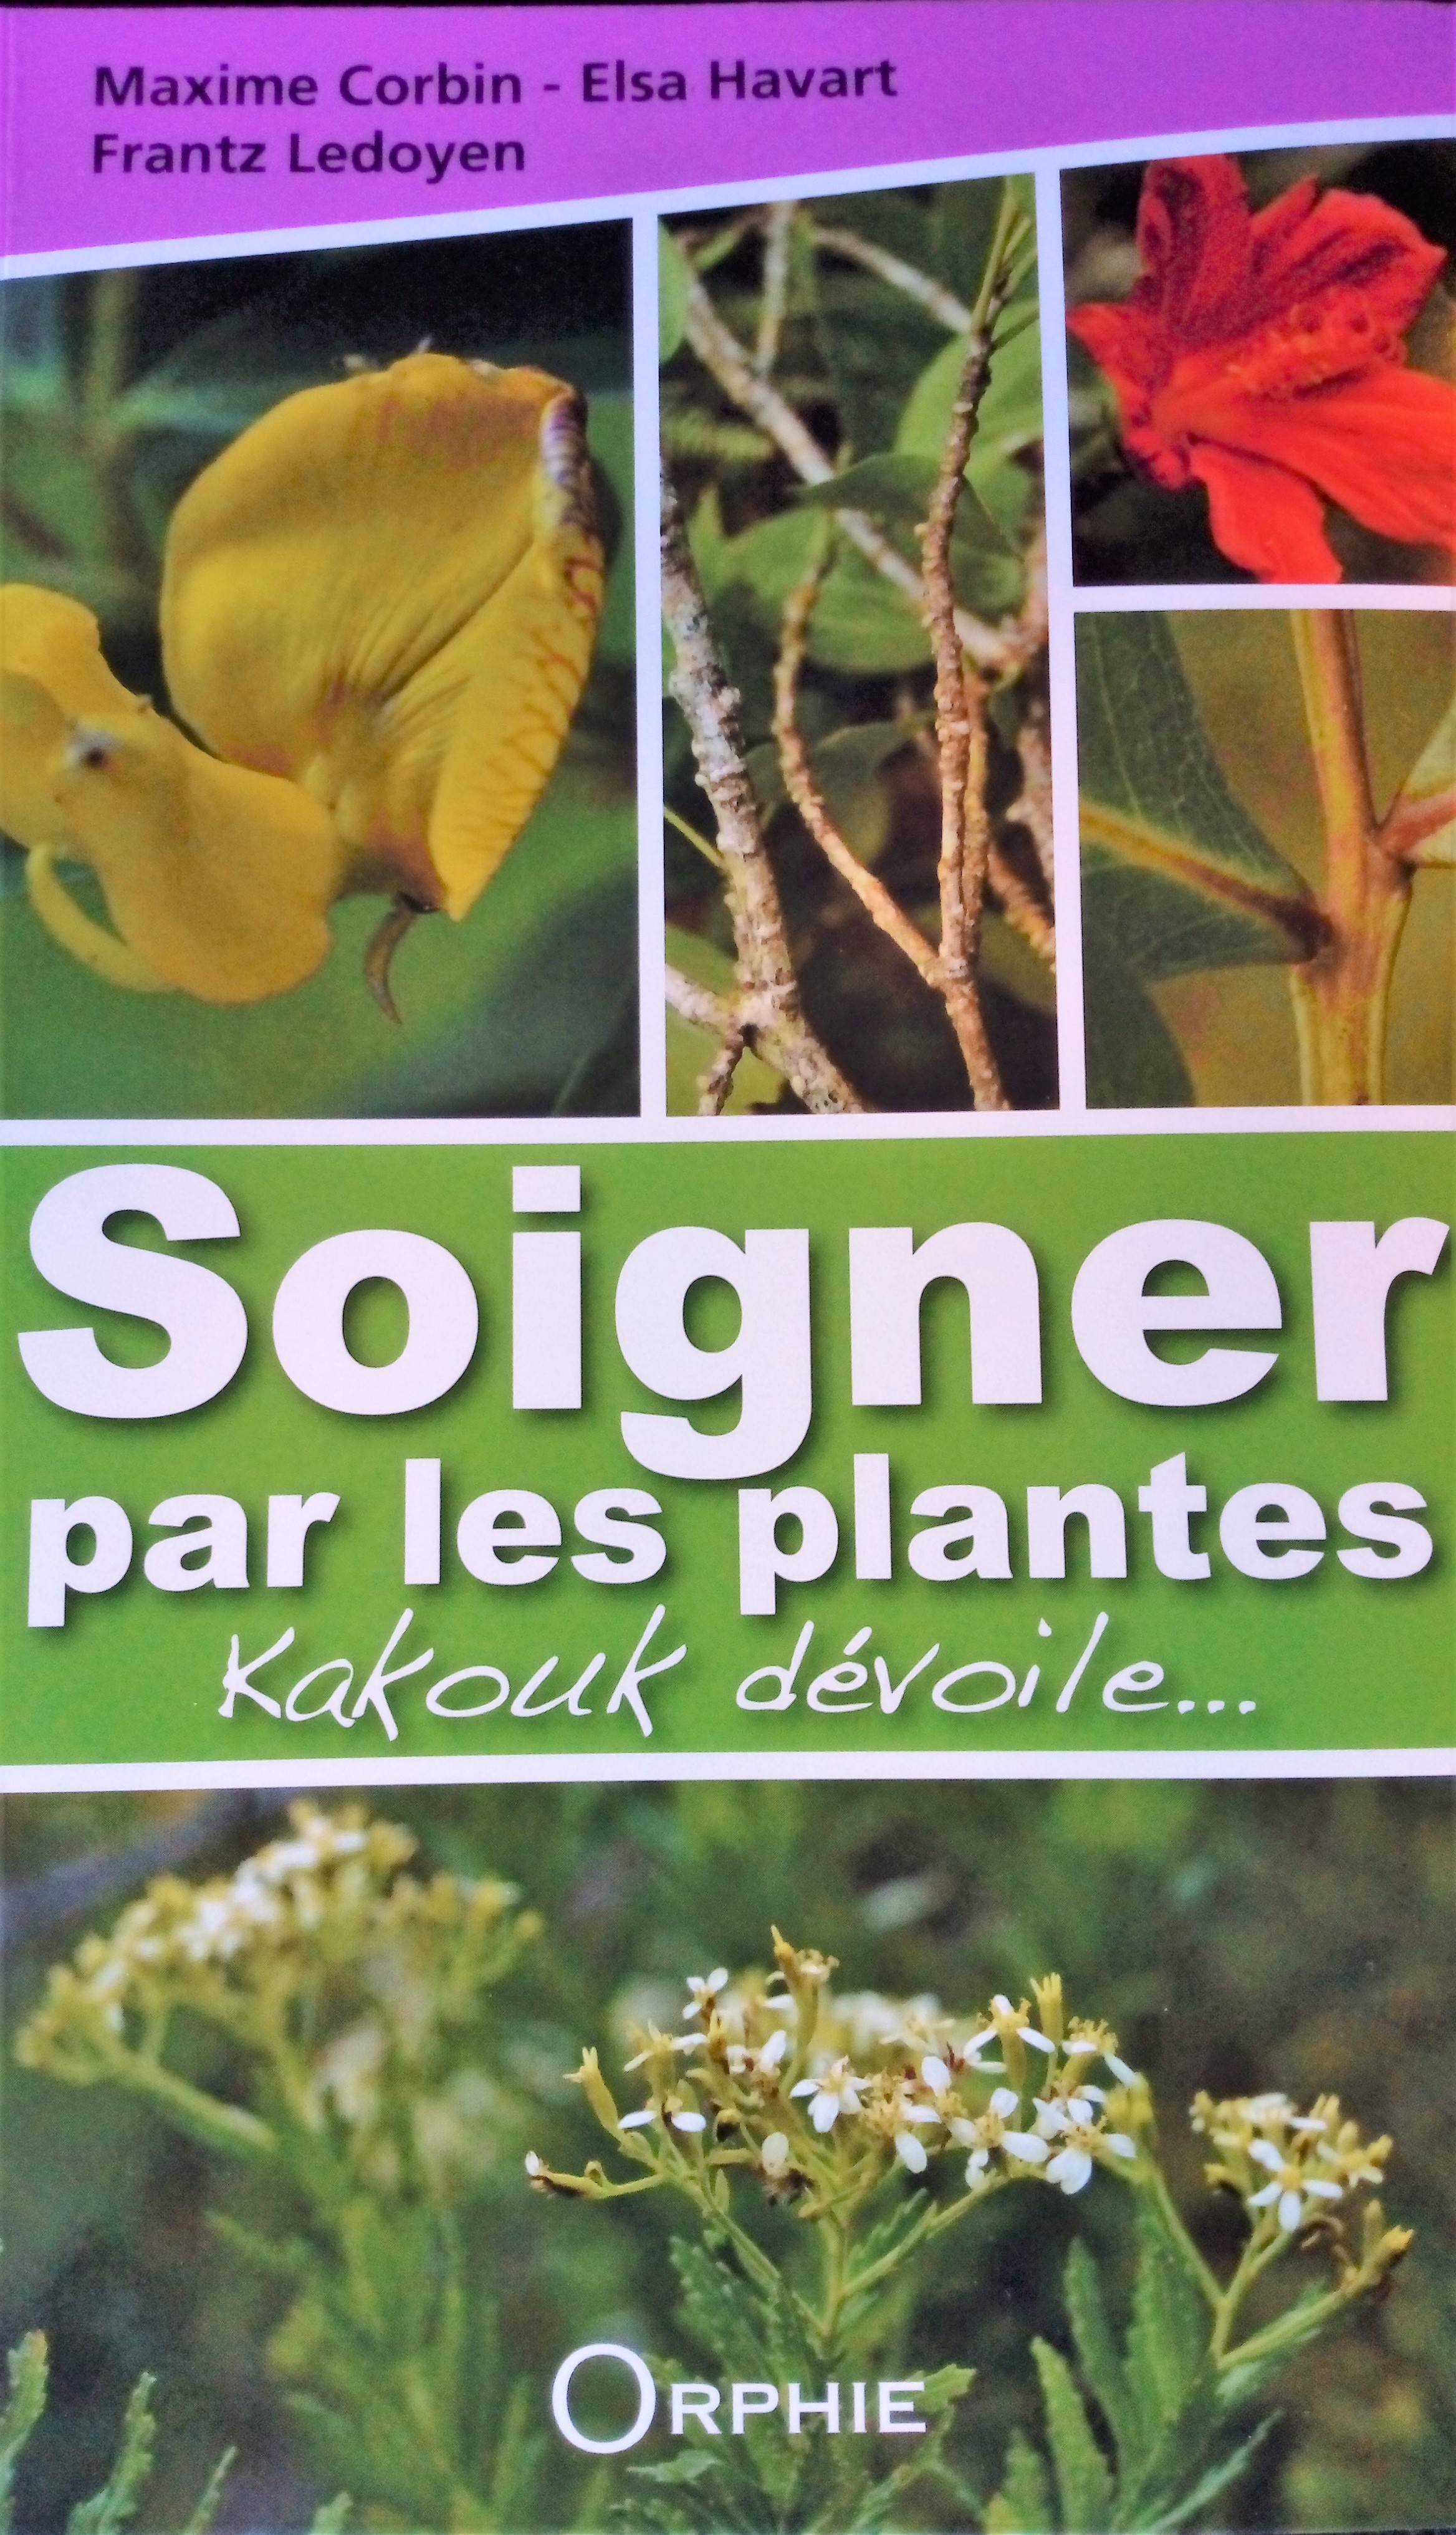 Soigner par les plantes, Kakouk dévoile – Tela Botanica